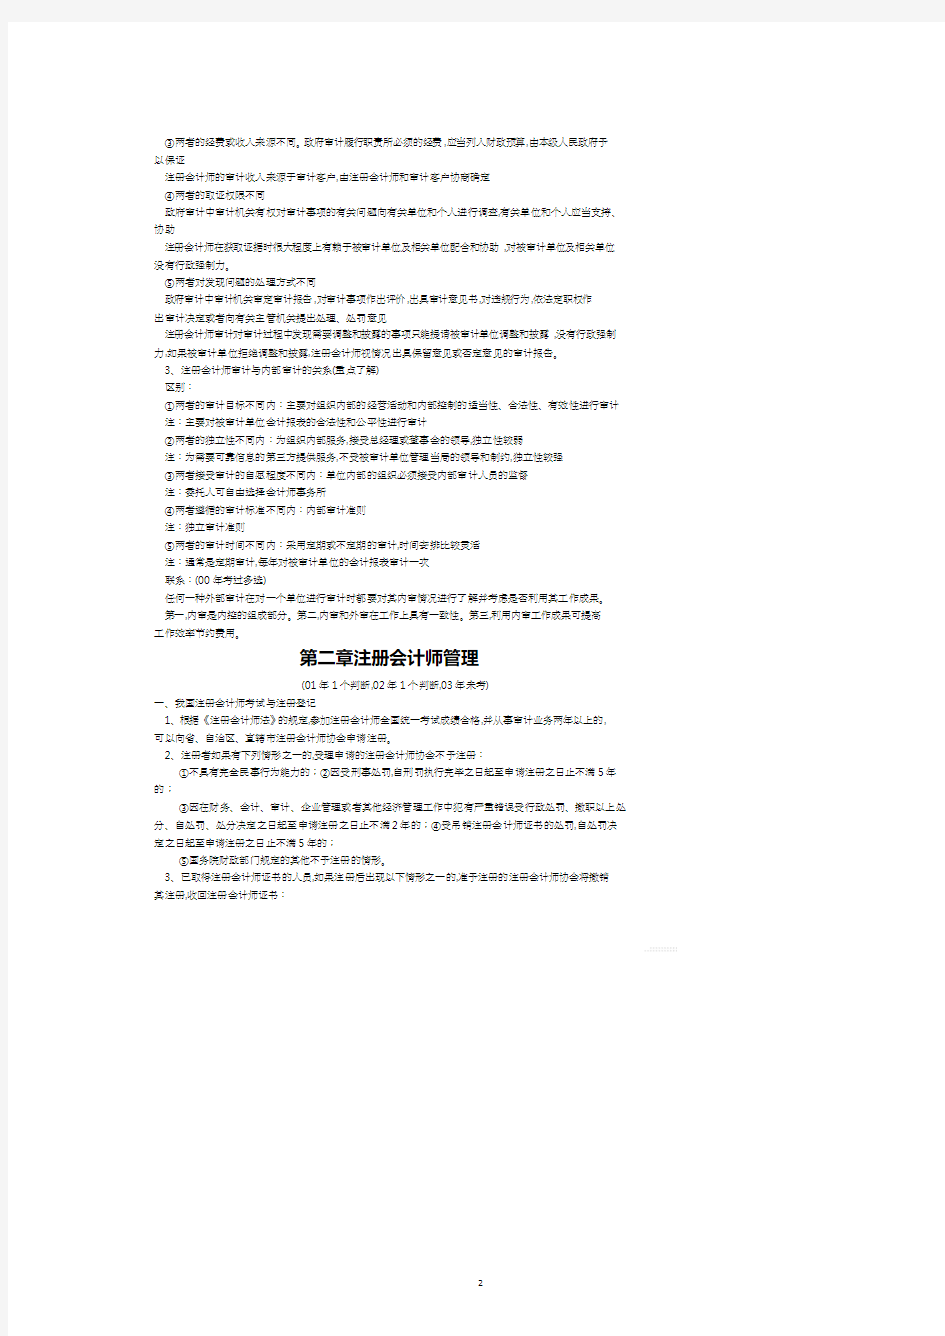 注册会计师审计讲义.pdf